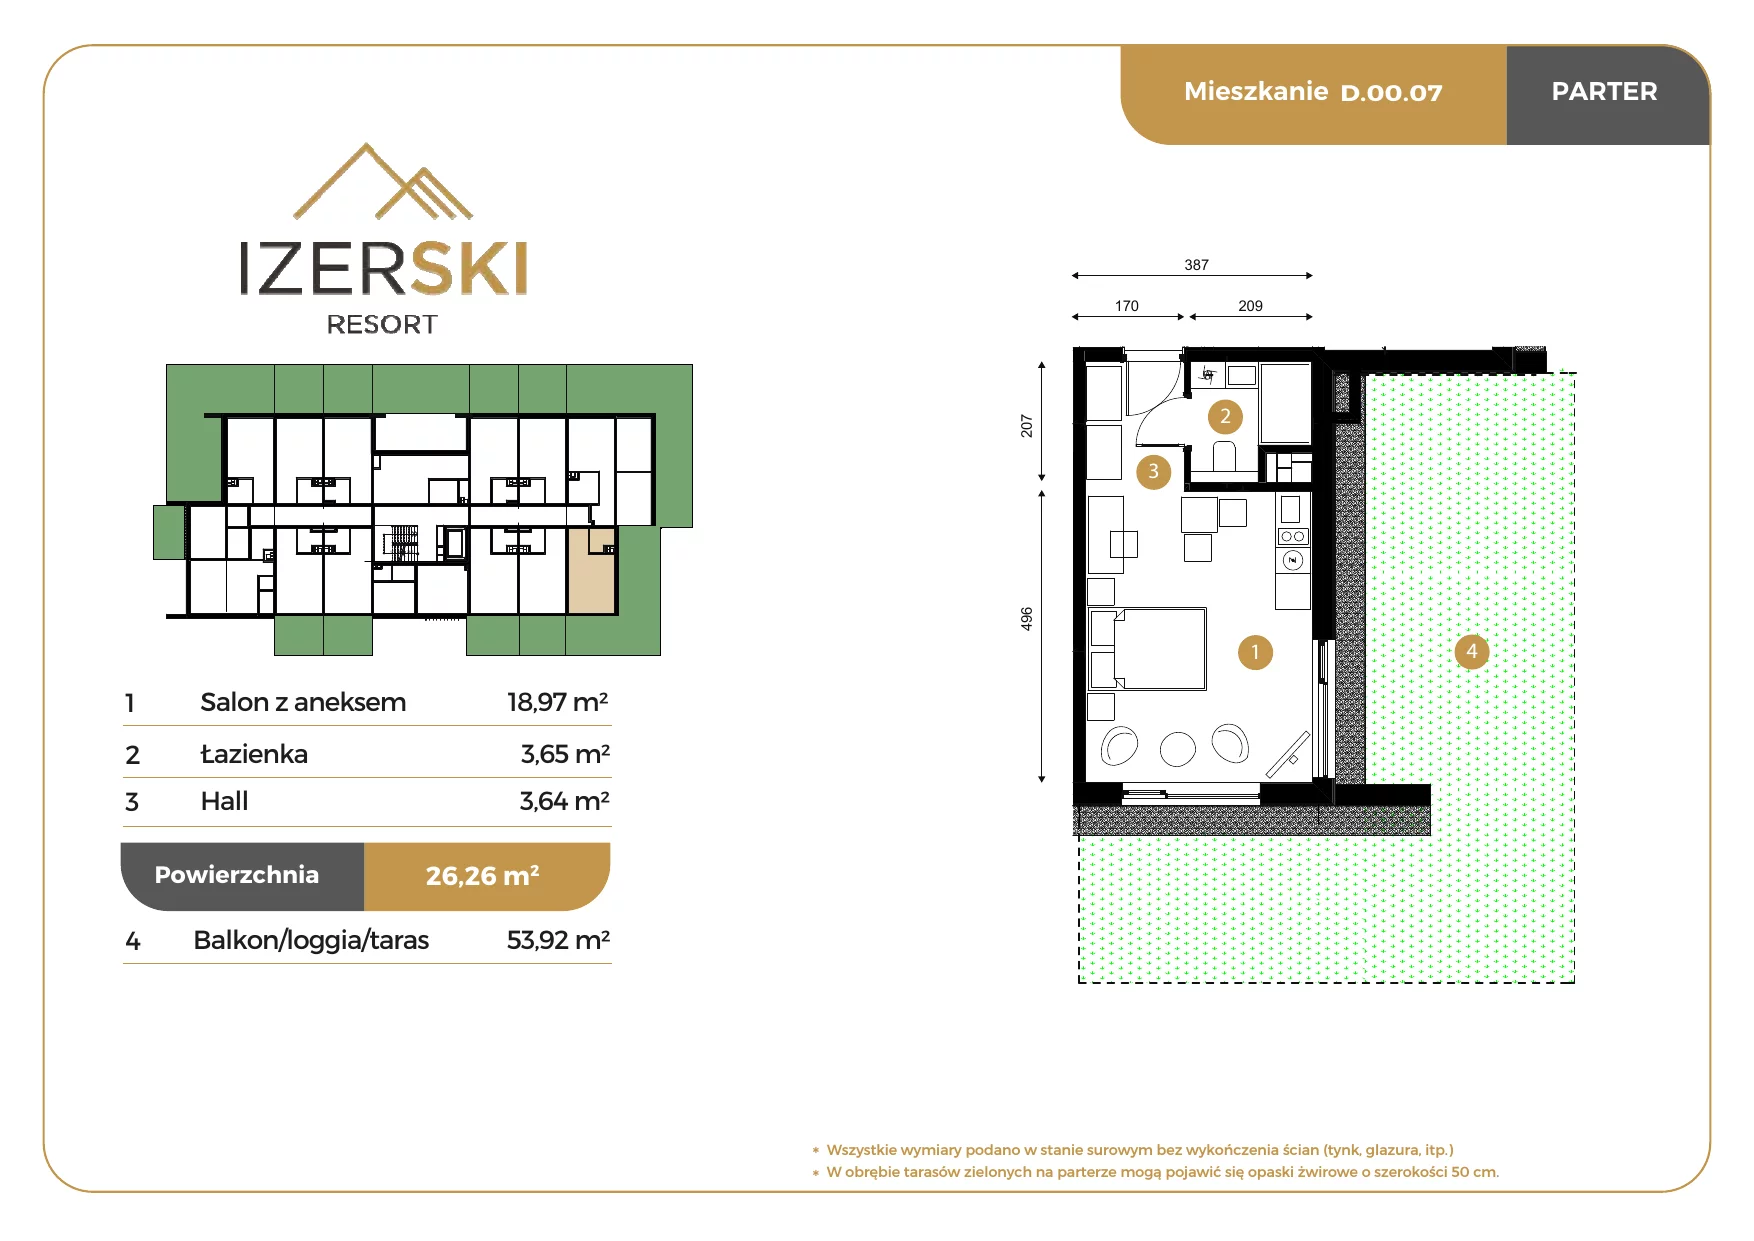 Apartament inwestycyjny 26,26 m², parter, oferta nr D.00.07, IzerSKI Resort, Świeradów-Zdrój, ul. Jana Kilińskiego 2